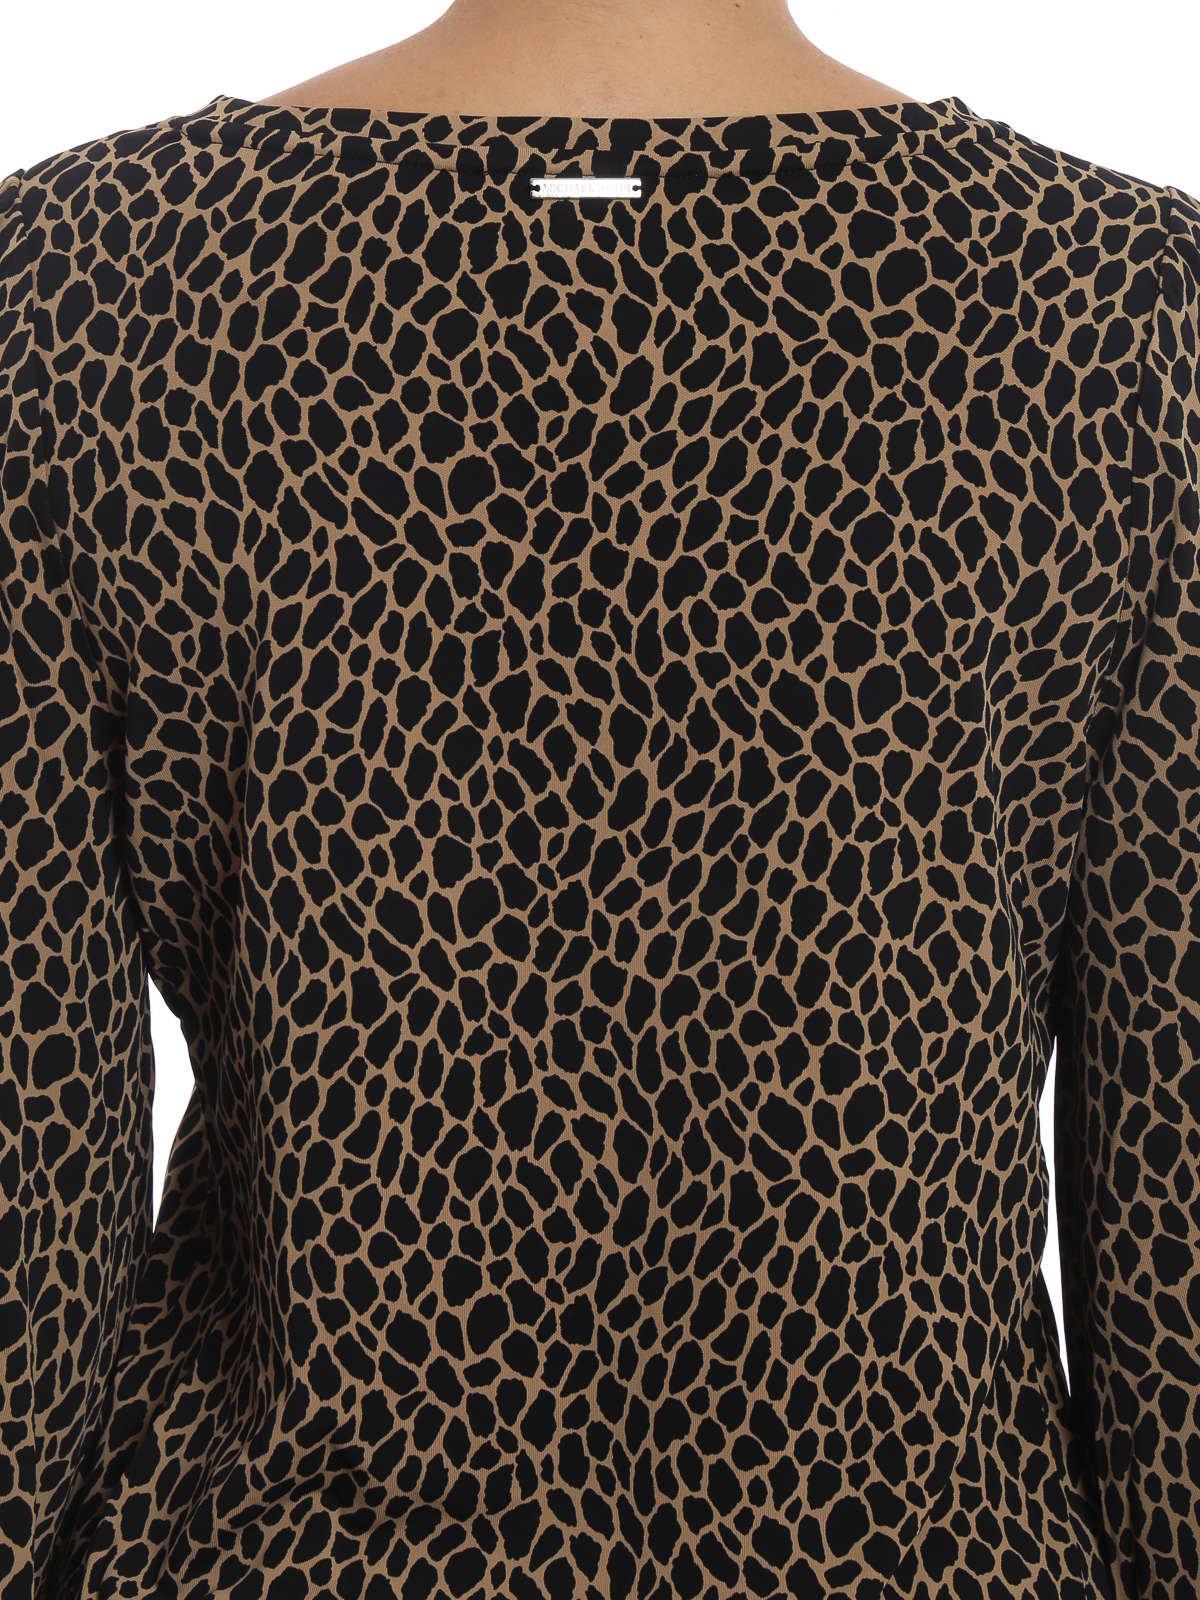 michael kors leopard blouse